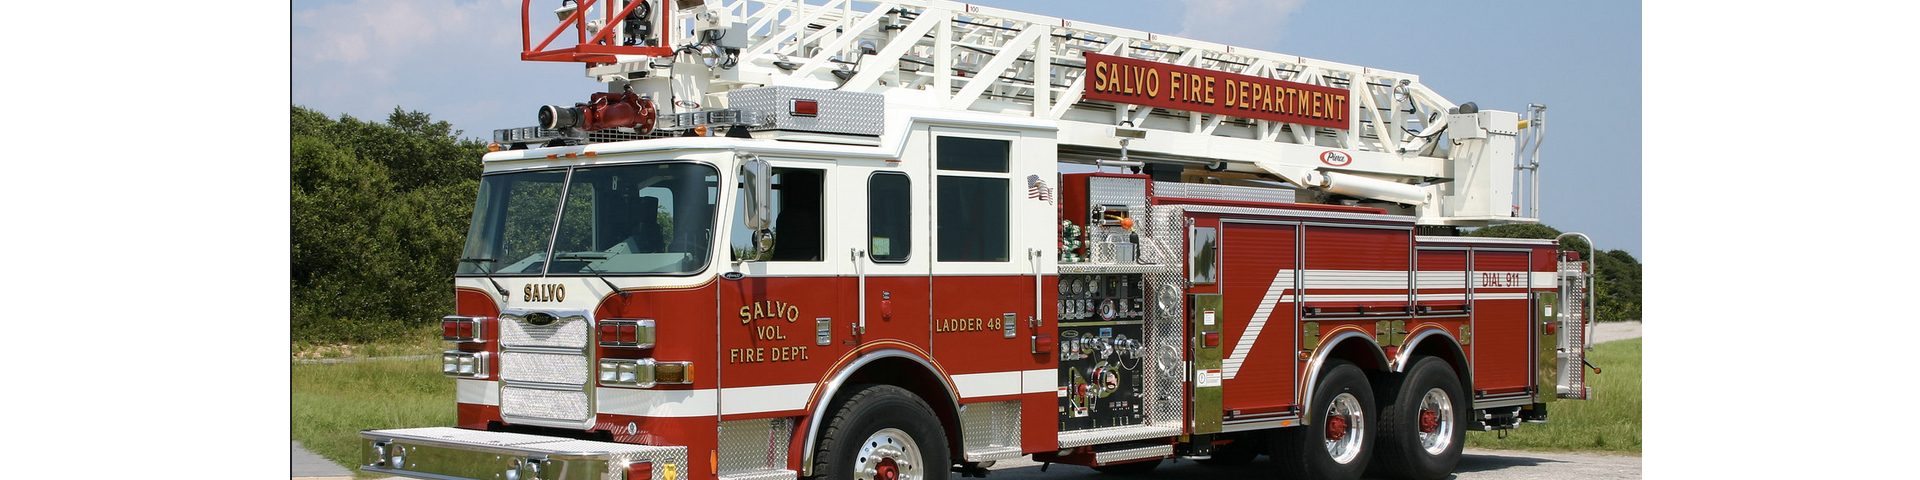 Salvo Volunteer Fire Department